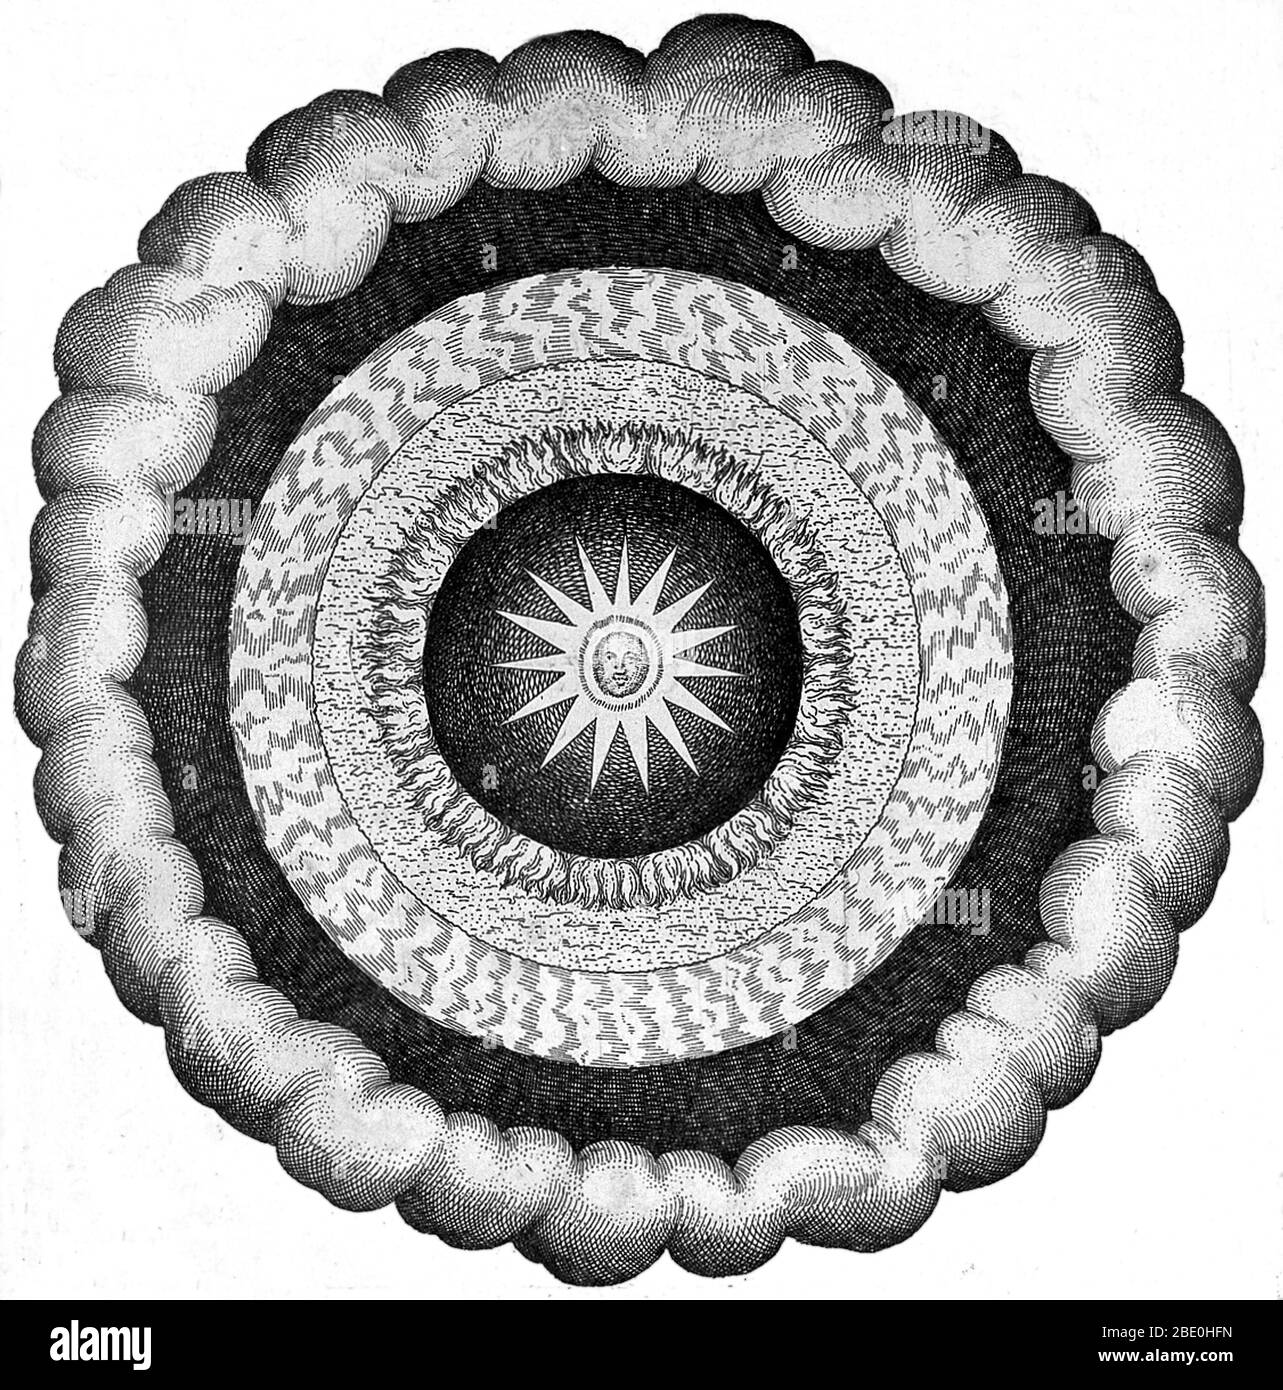 Fludd's kosmische Reiche. Kunstwerk, das die heliozentrische (sonnenzentrierte) Weltanschauung zeigt, die in den makrokosmischen Prinzipien des englischen Arztes, Astrologen und Mystikers Robert Fludd (1574-1637) beschrieben wird. Im 16. Und 17. Jahrhundert wurden Vorstellungen von Makrokosmos und Mikrokosmos weithin akzeptiert. Viele Menschen glaubten, dass die gleichen Muster im menschlichen Körper in kleinem Maßstab (Mikrokosmos) im natürlichen Universum als Ganzes (Makrokosmos) gefunden werden. Fludd's Philosophie ist in Utriusque Cosmi, Maioris scilicet Minoris, metaphysica, physica, atque technica Historia (die metaphysische, physische, Stockfoto